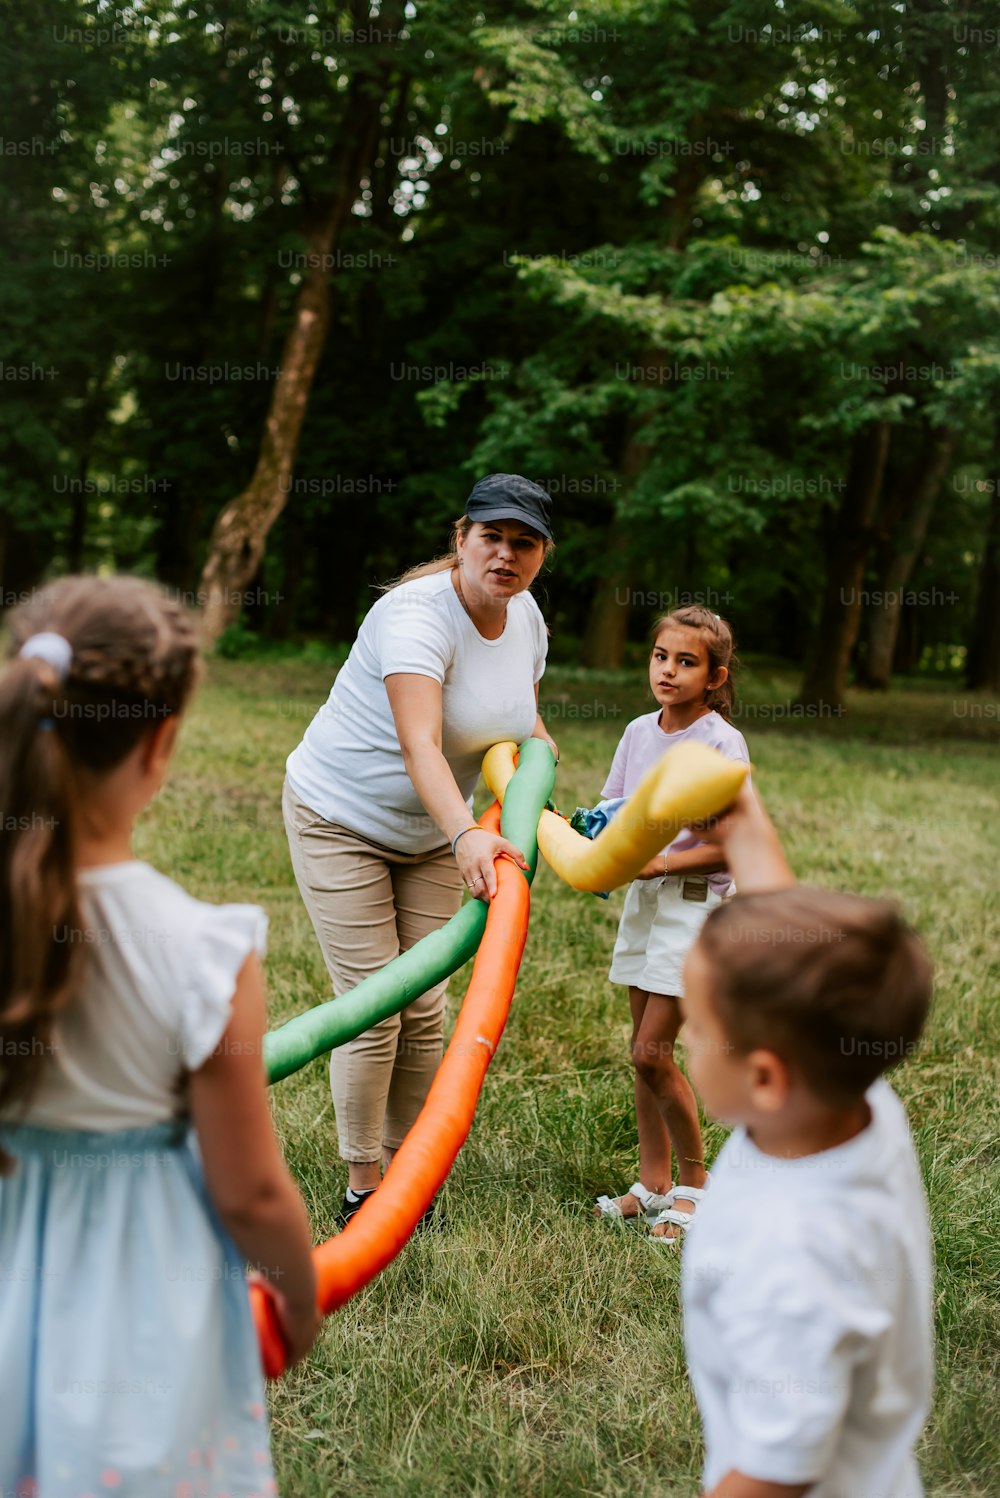 Una mujer y dos niños jugando con un tubo inflable